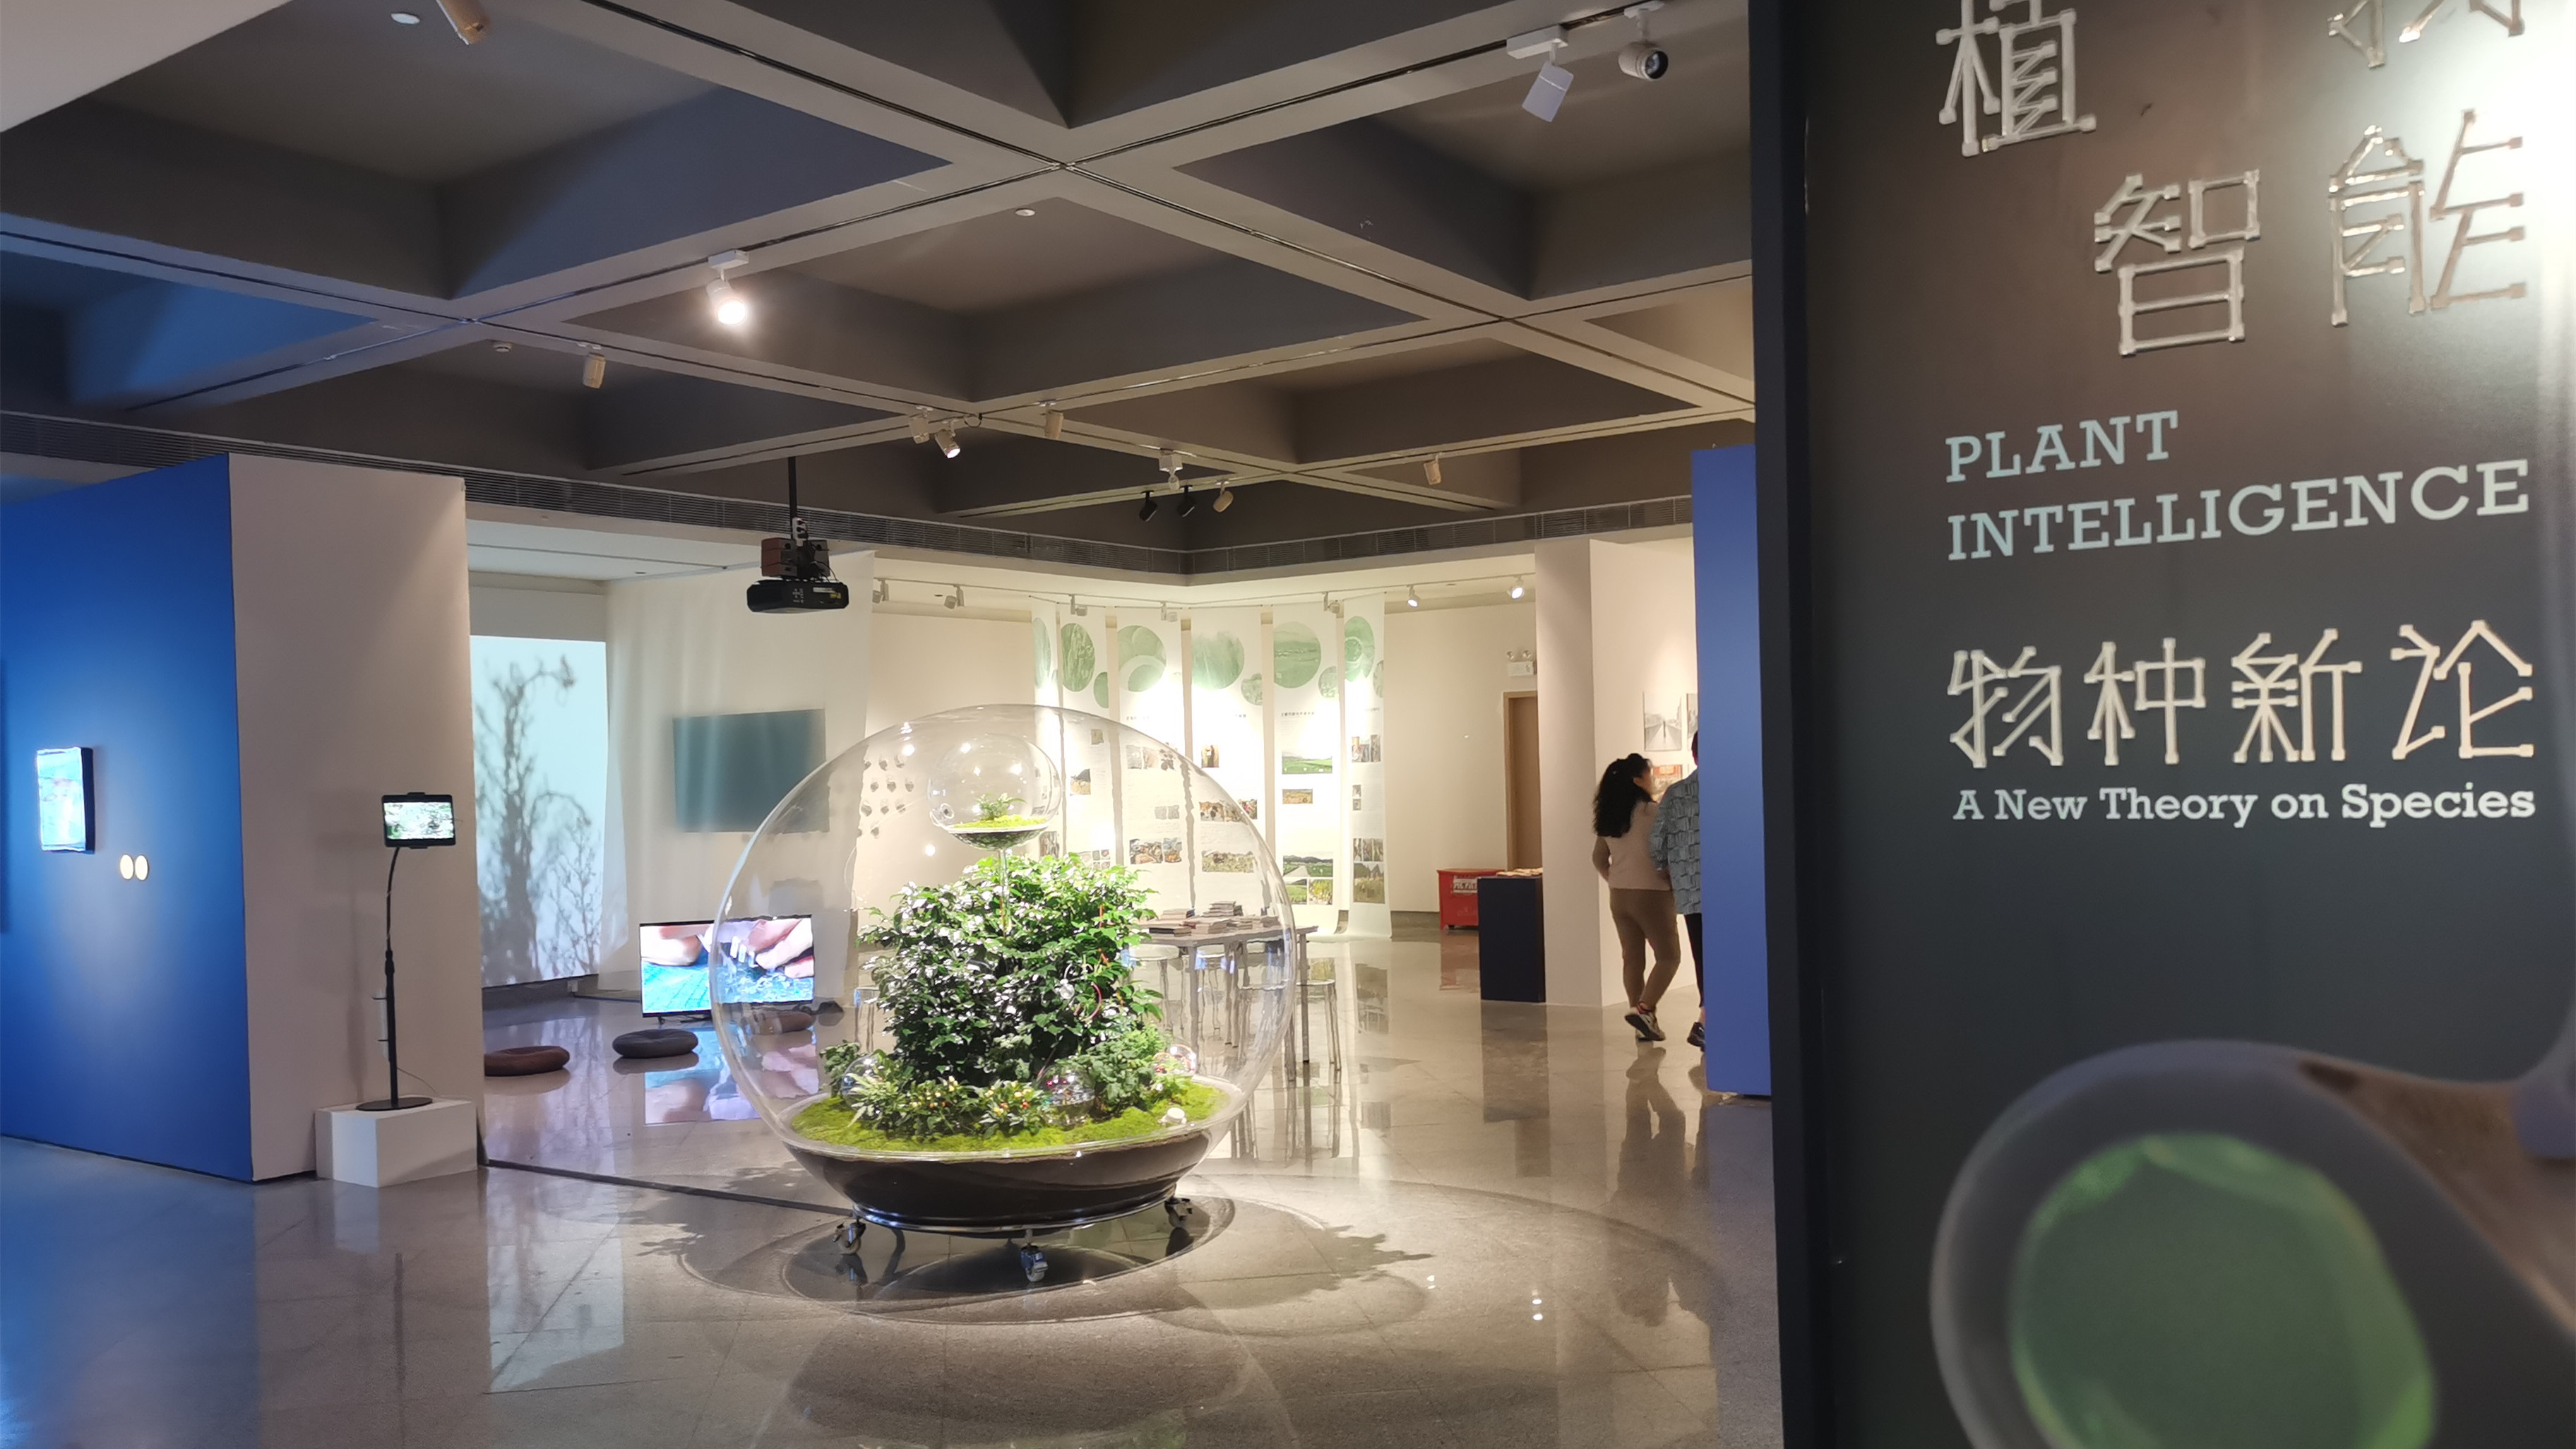 「植物智能——物種新論」亮相深圳關山月美術館